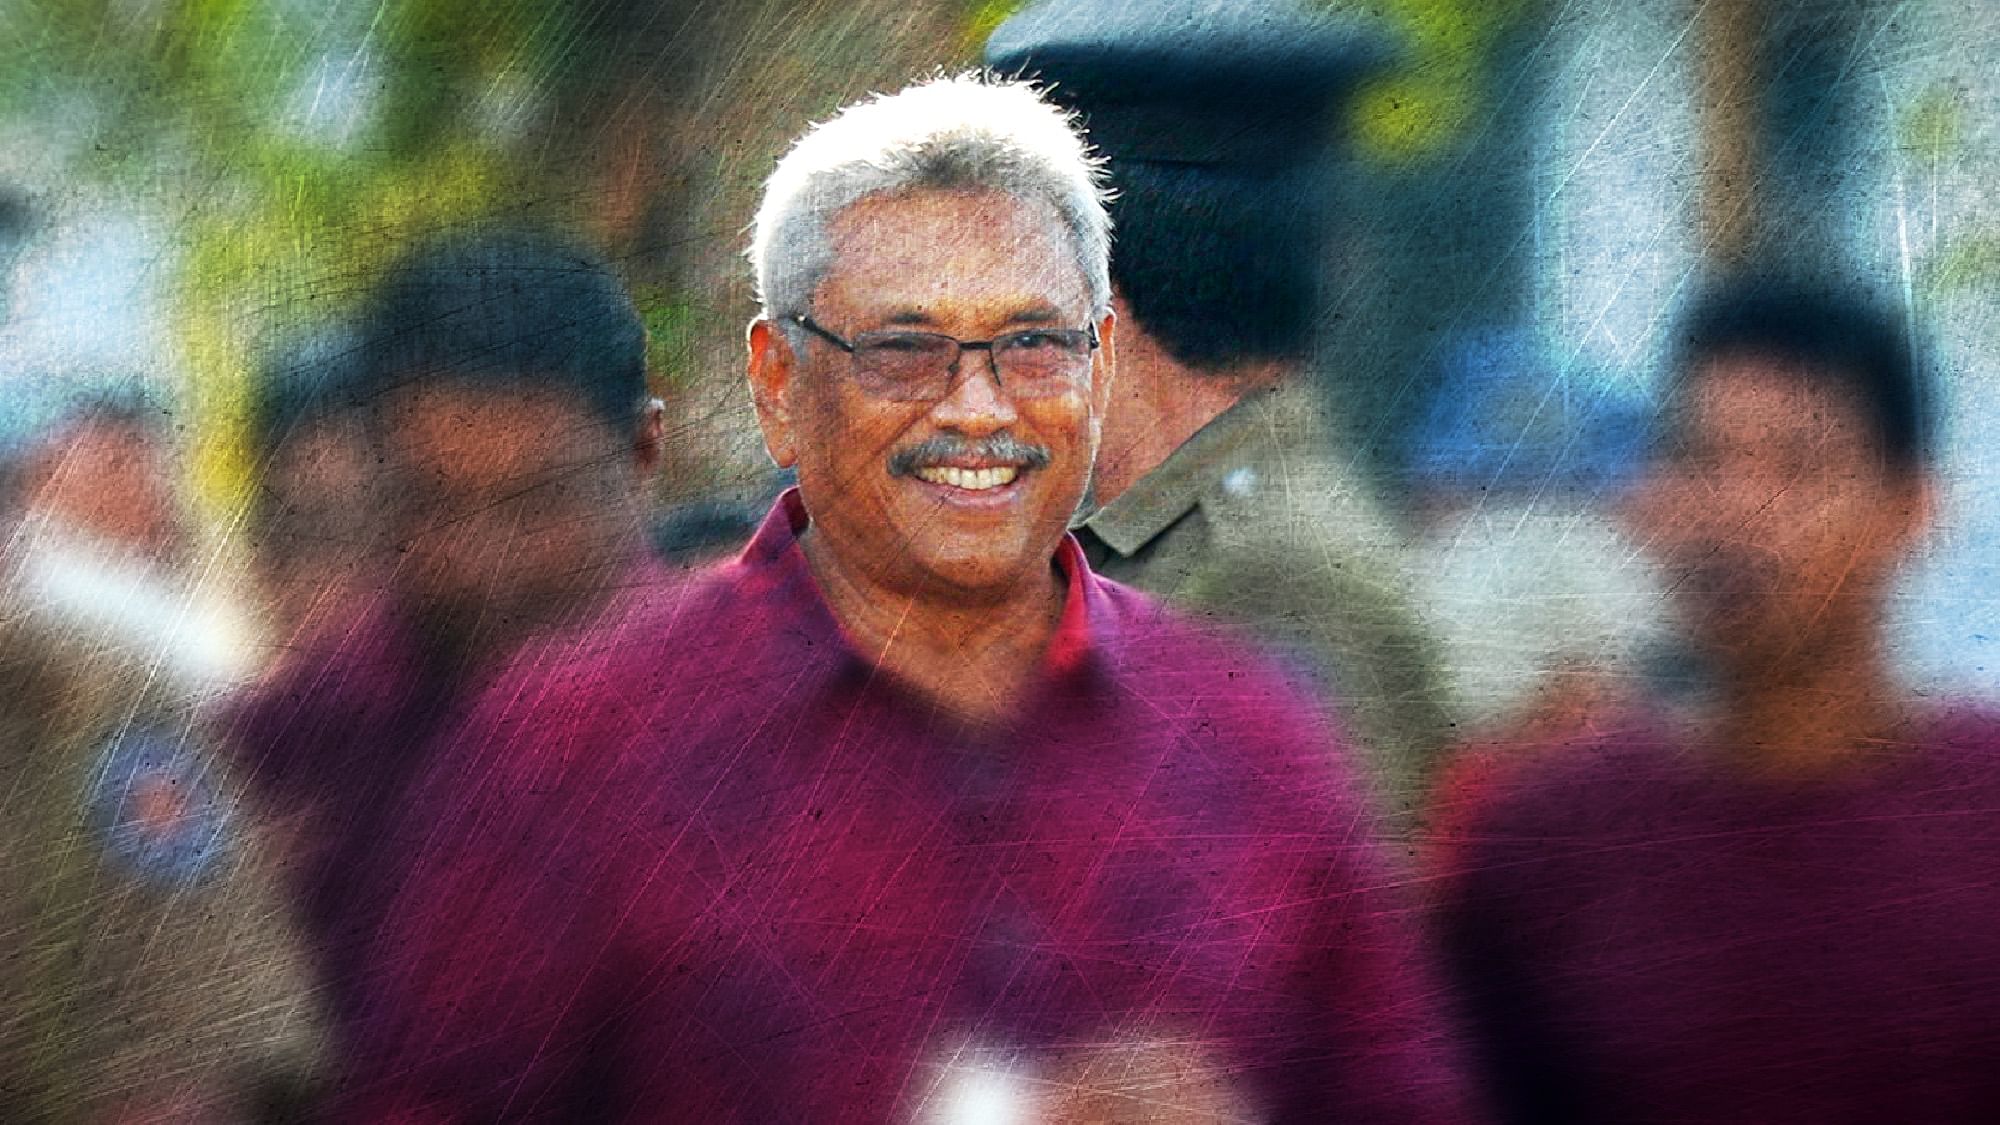 Image of new Sri Lankan President Gotabaya Rajapaksa used for representational purposes.